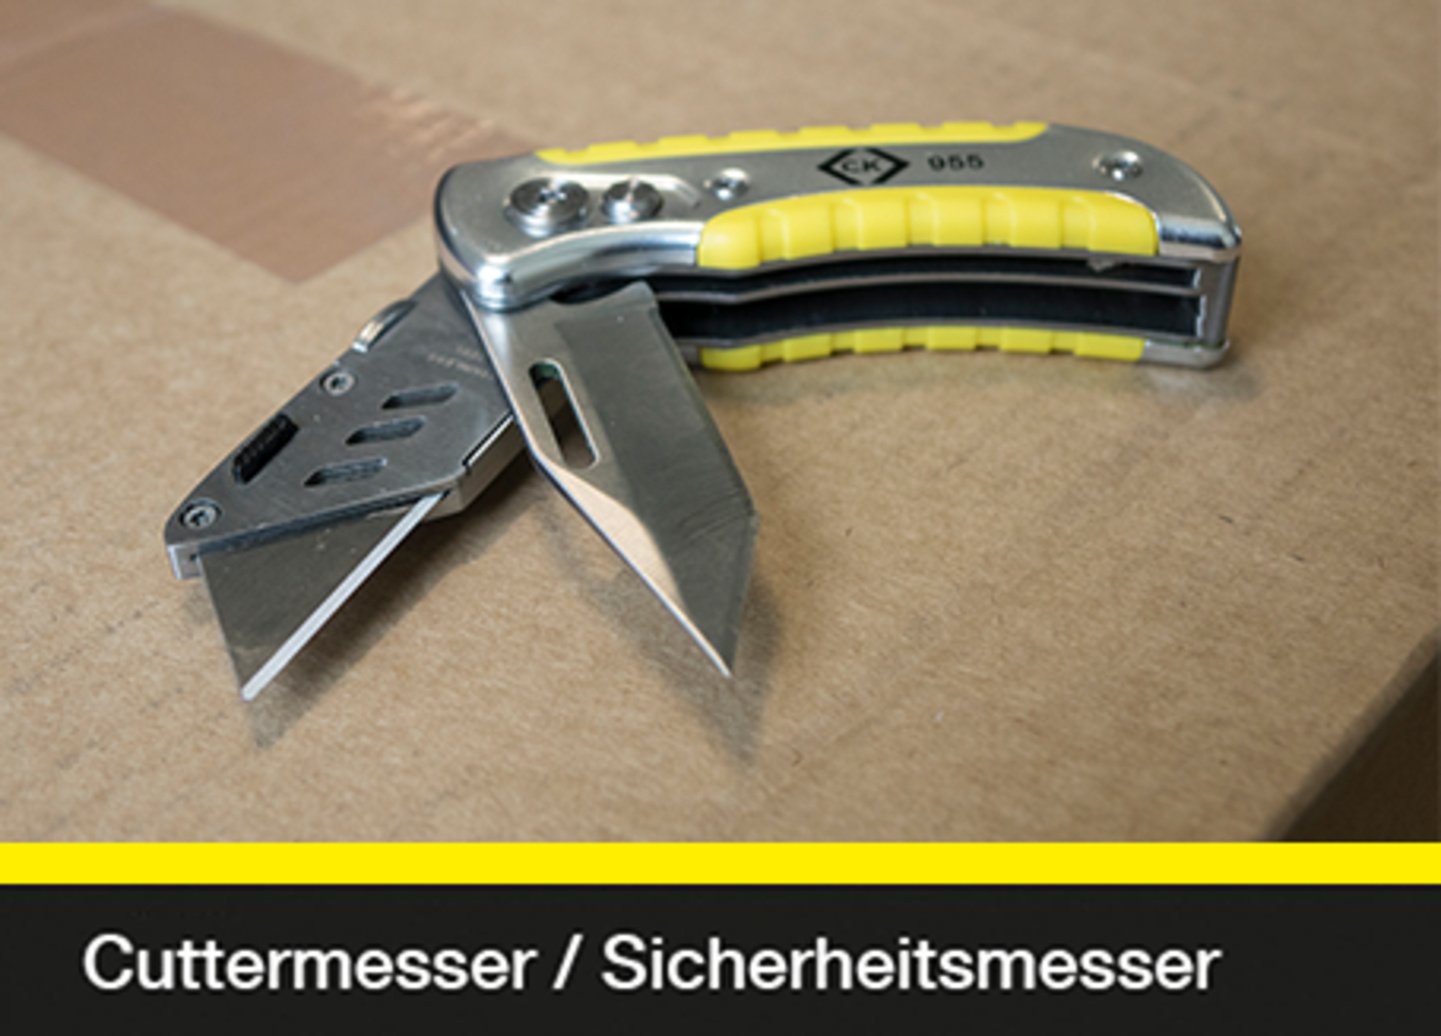 Cuttermesser / Sicherheitsmesser